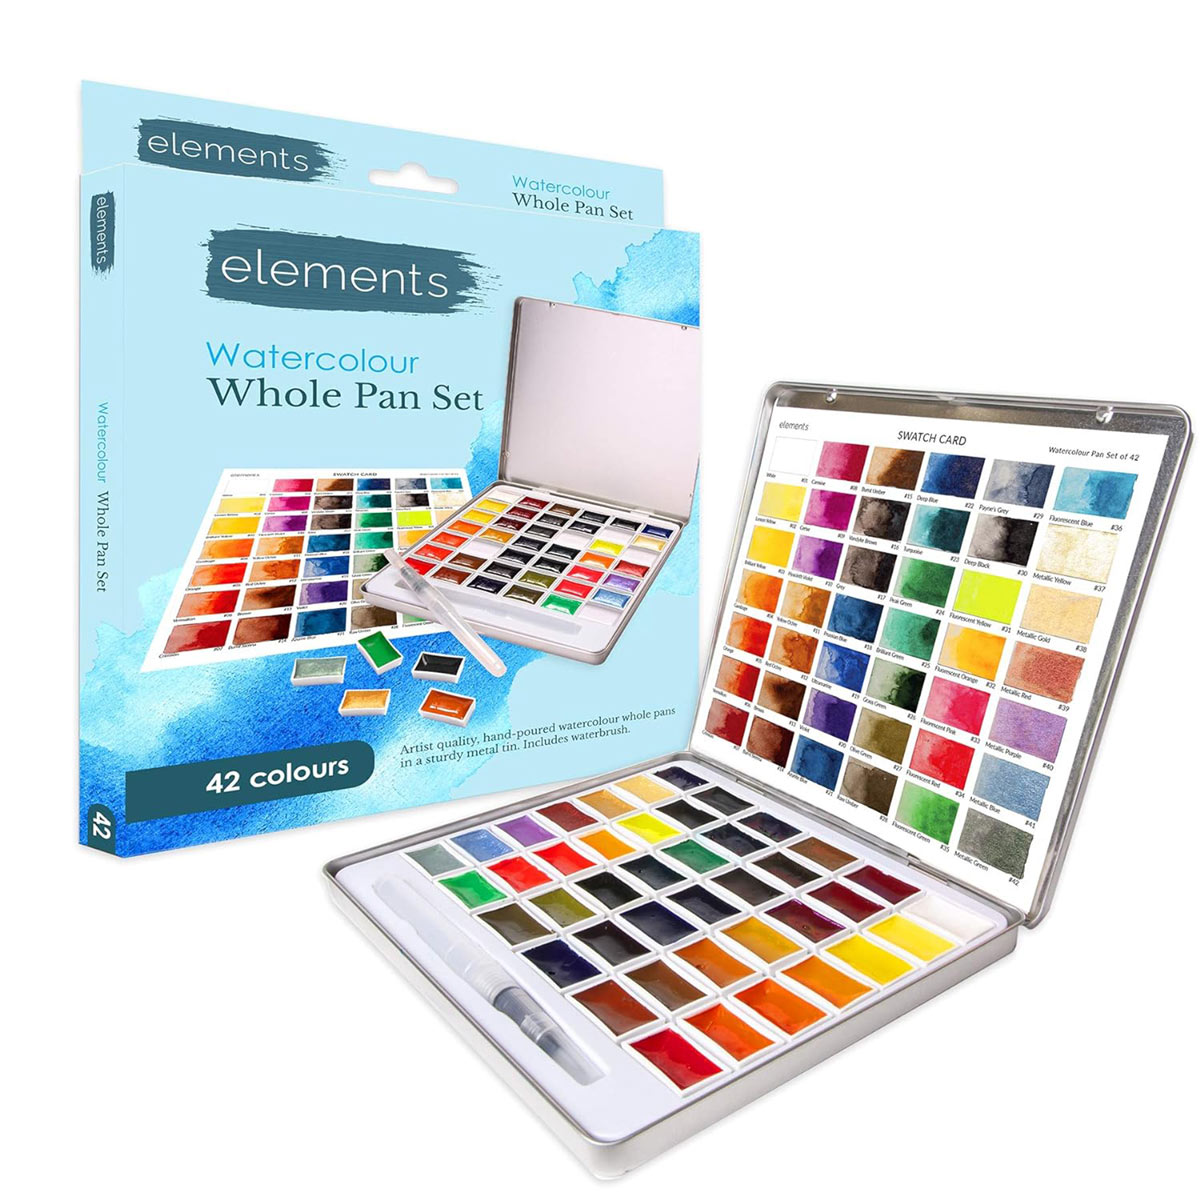 Elements 42x Whole Pan Watercolour Paint Set